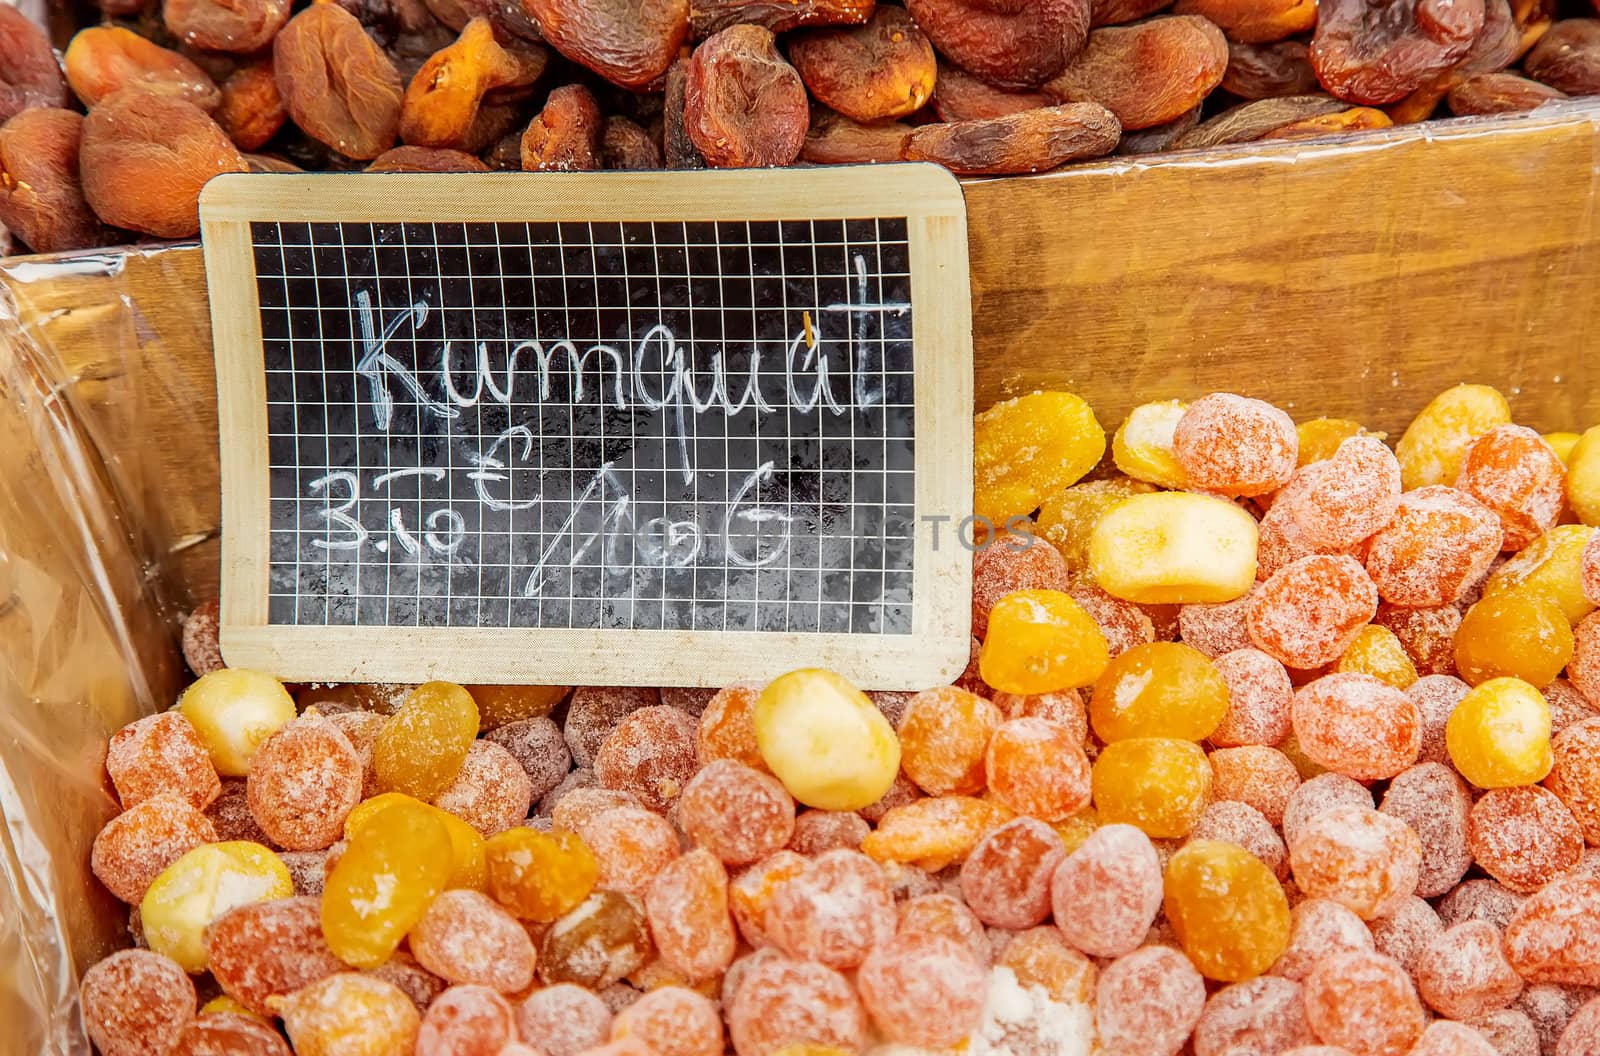 kumquat ("kumquat" in French) at the food market by pixinoo